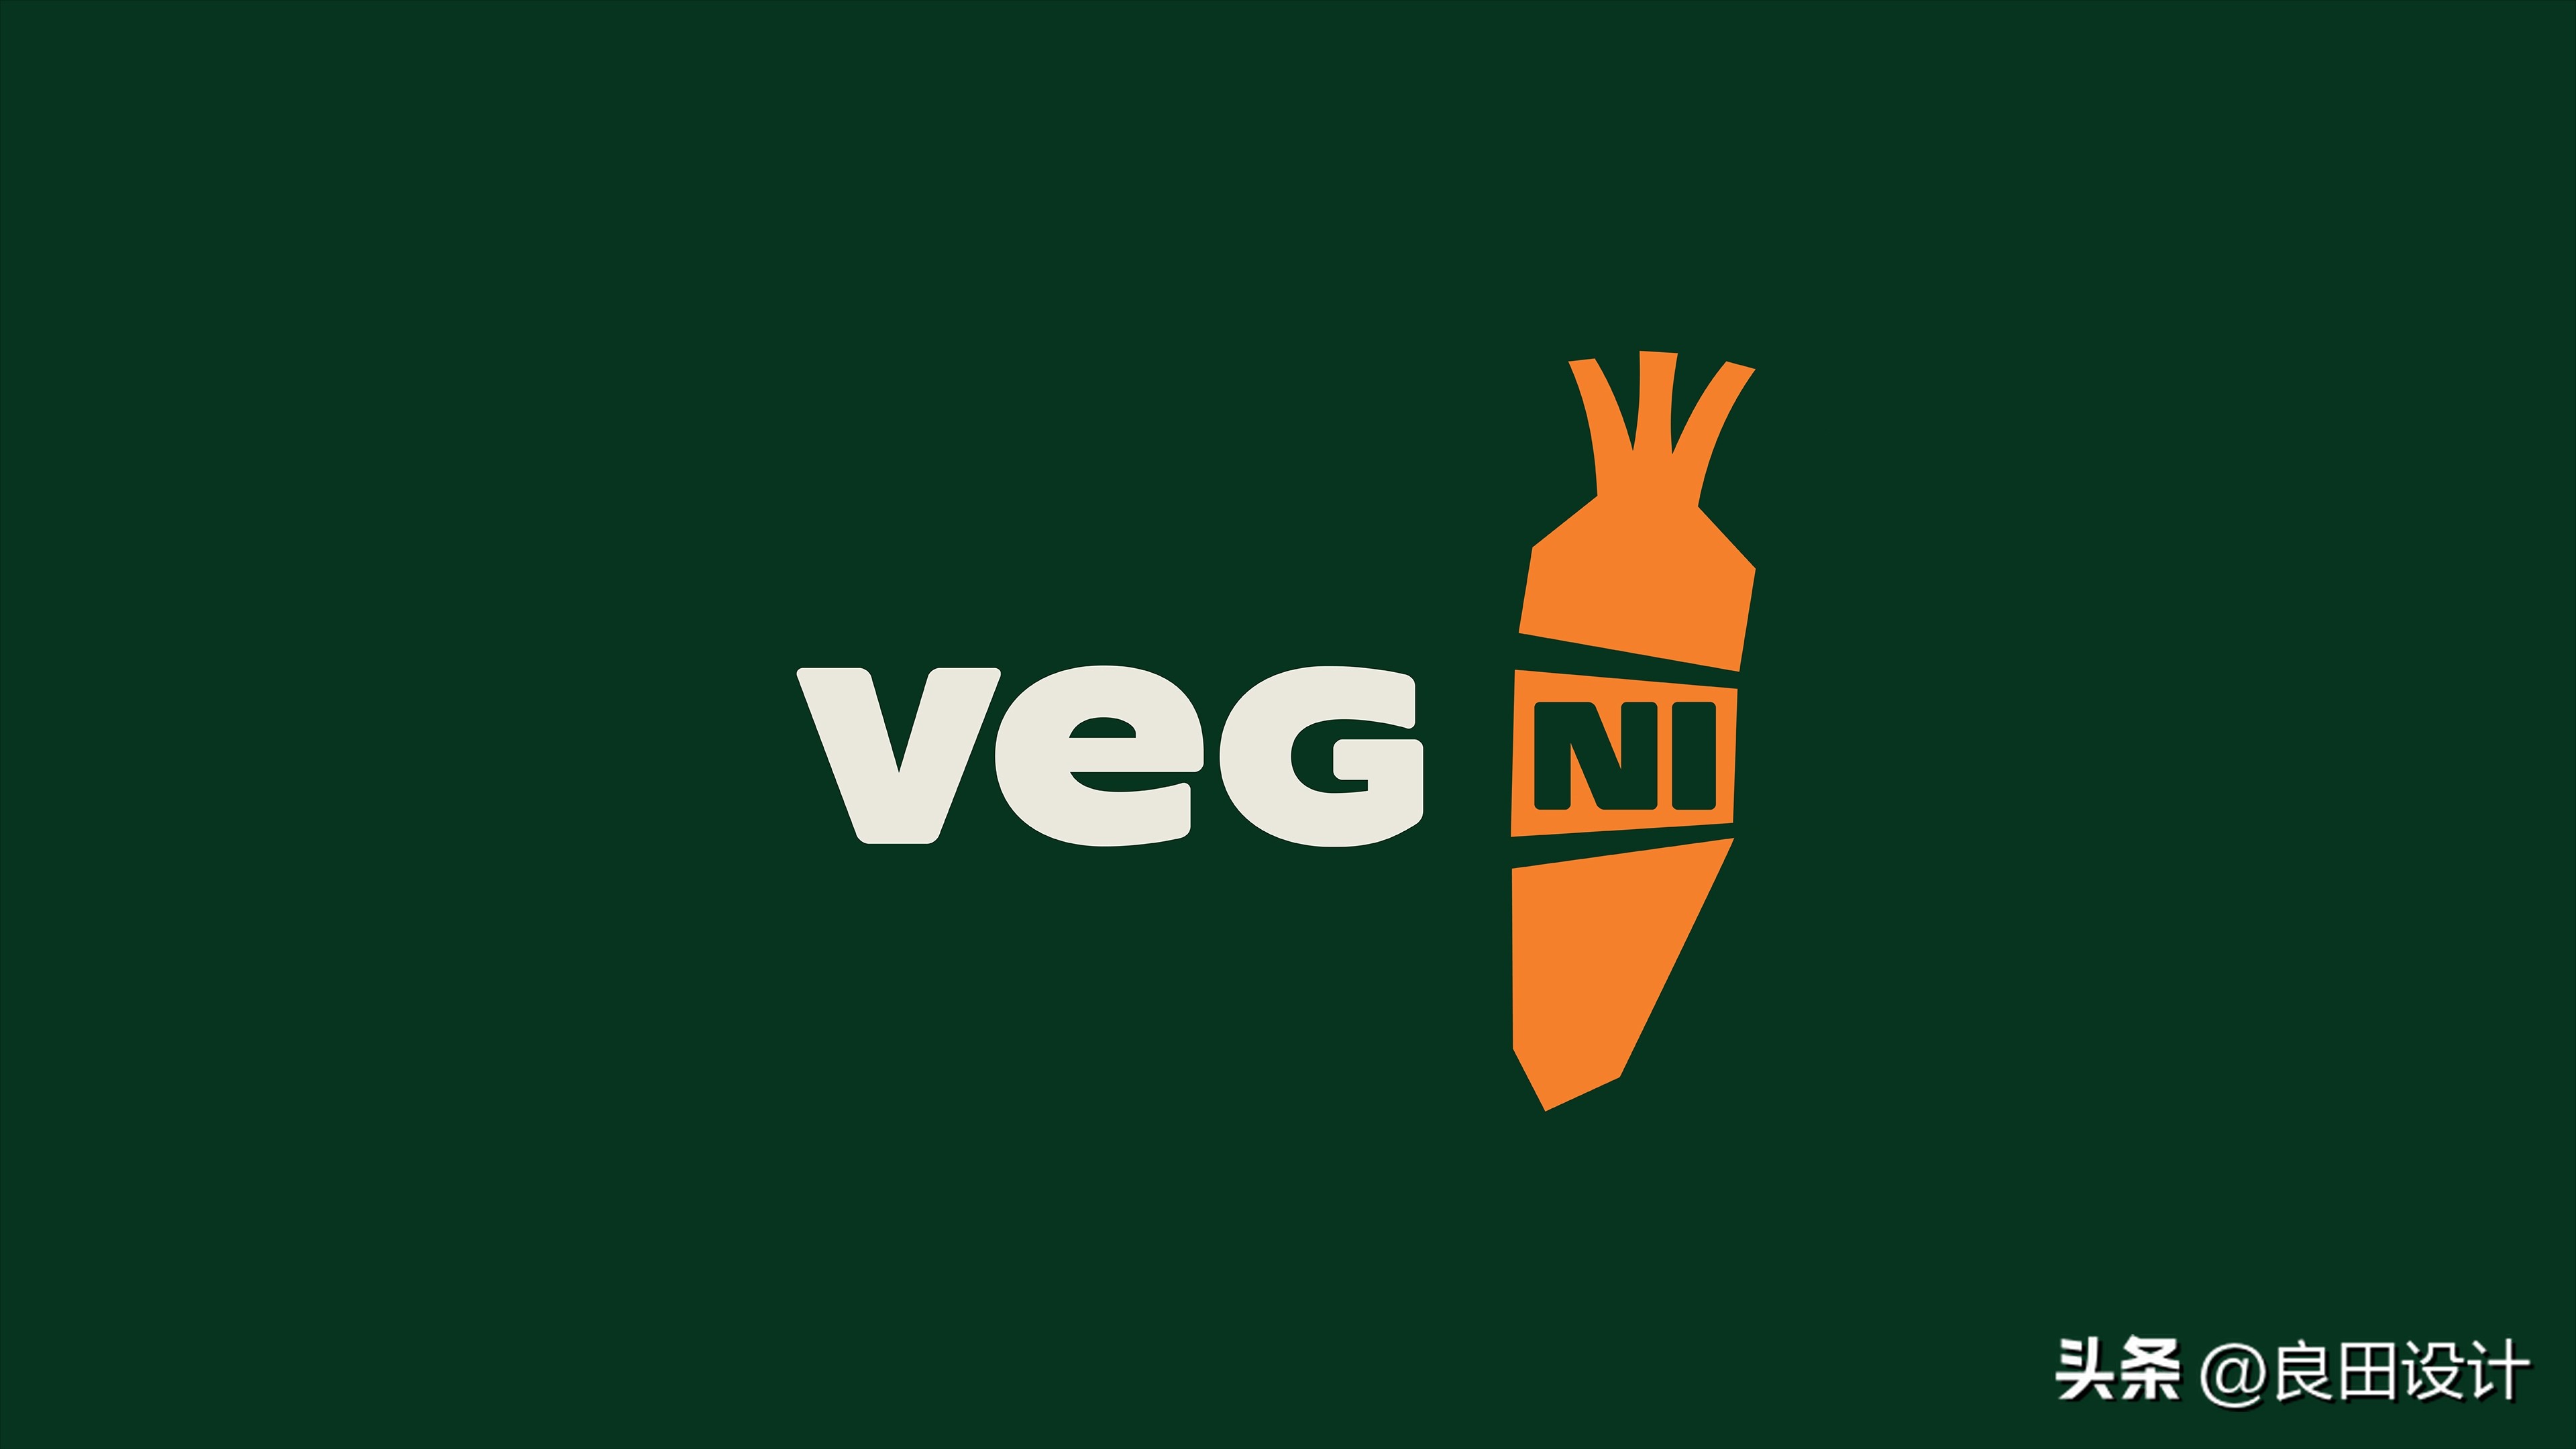 国外绿色包装设计案例欣赏(Veg NI蔬菜种植品牌包装设计)